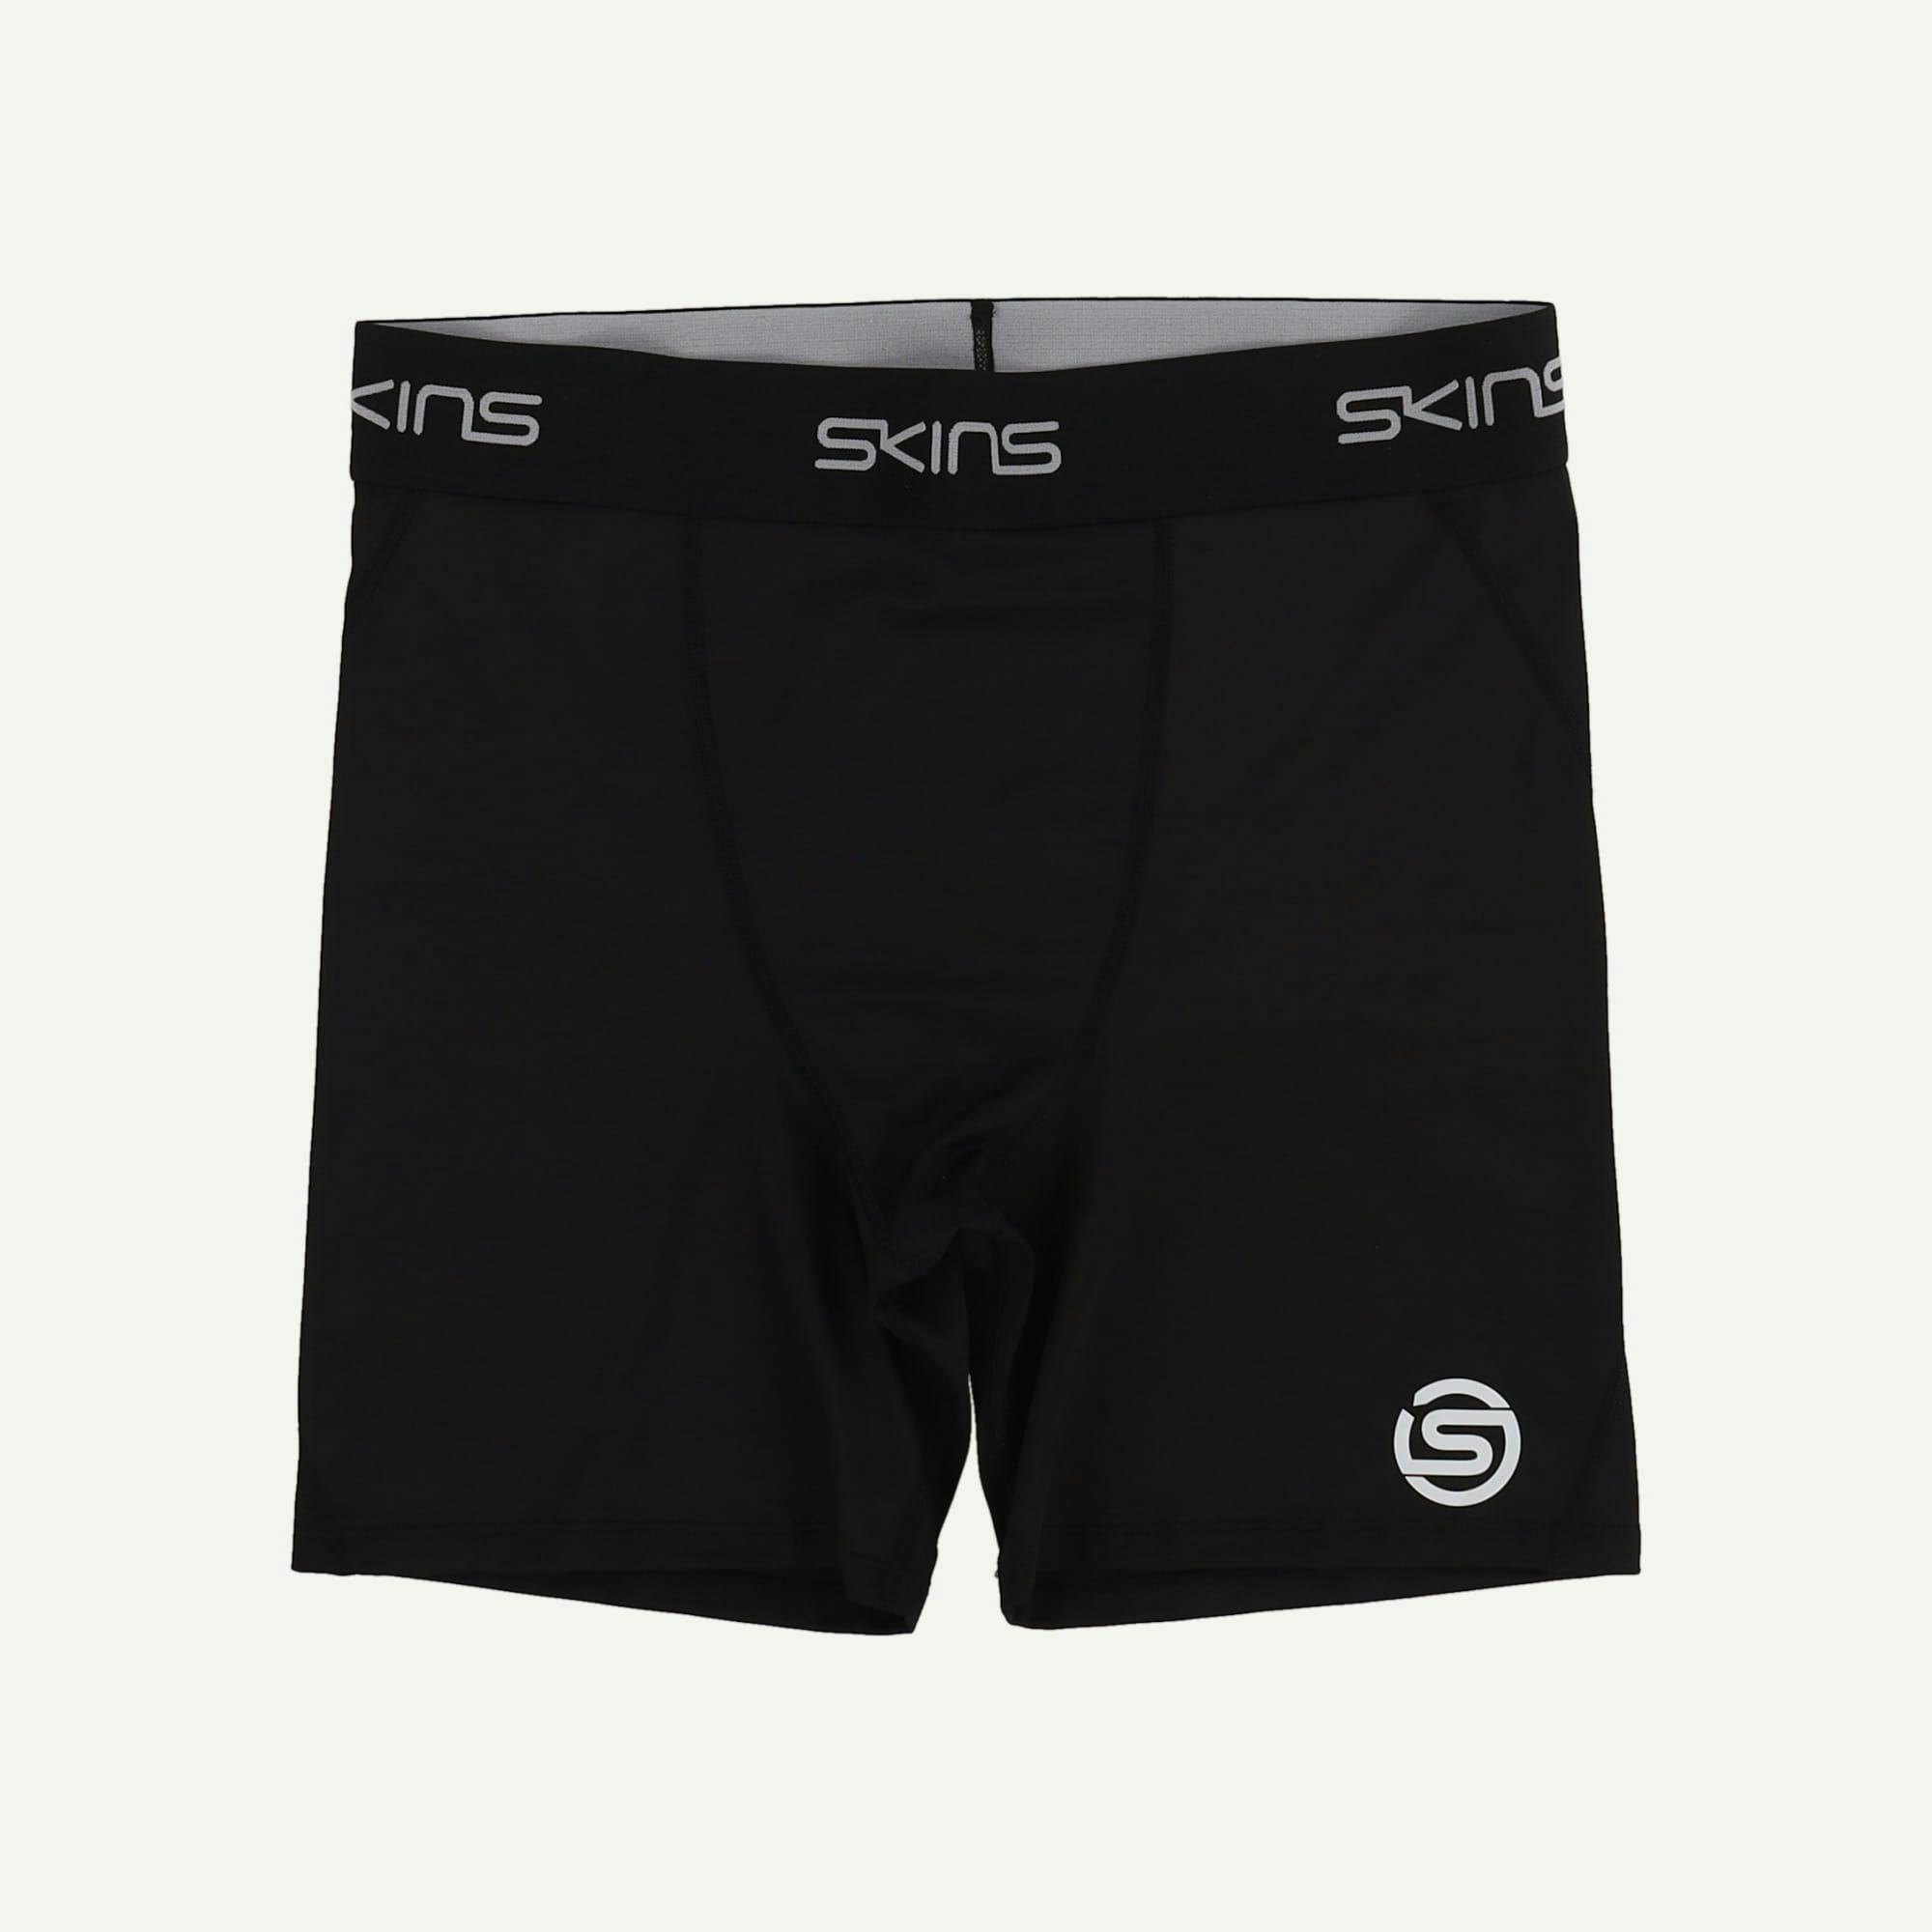 Series 1 Shorts